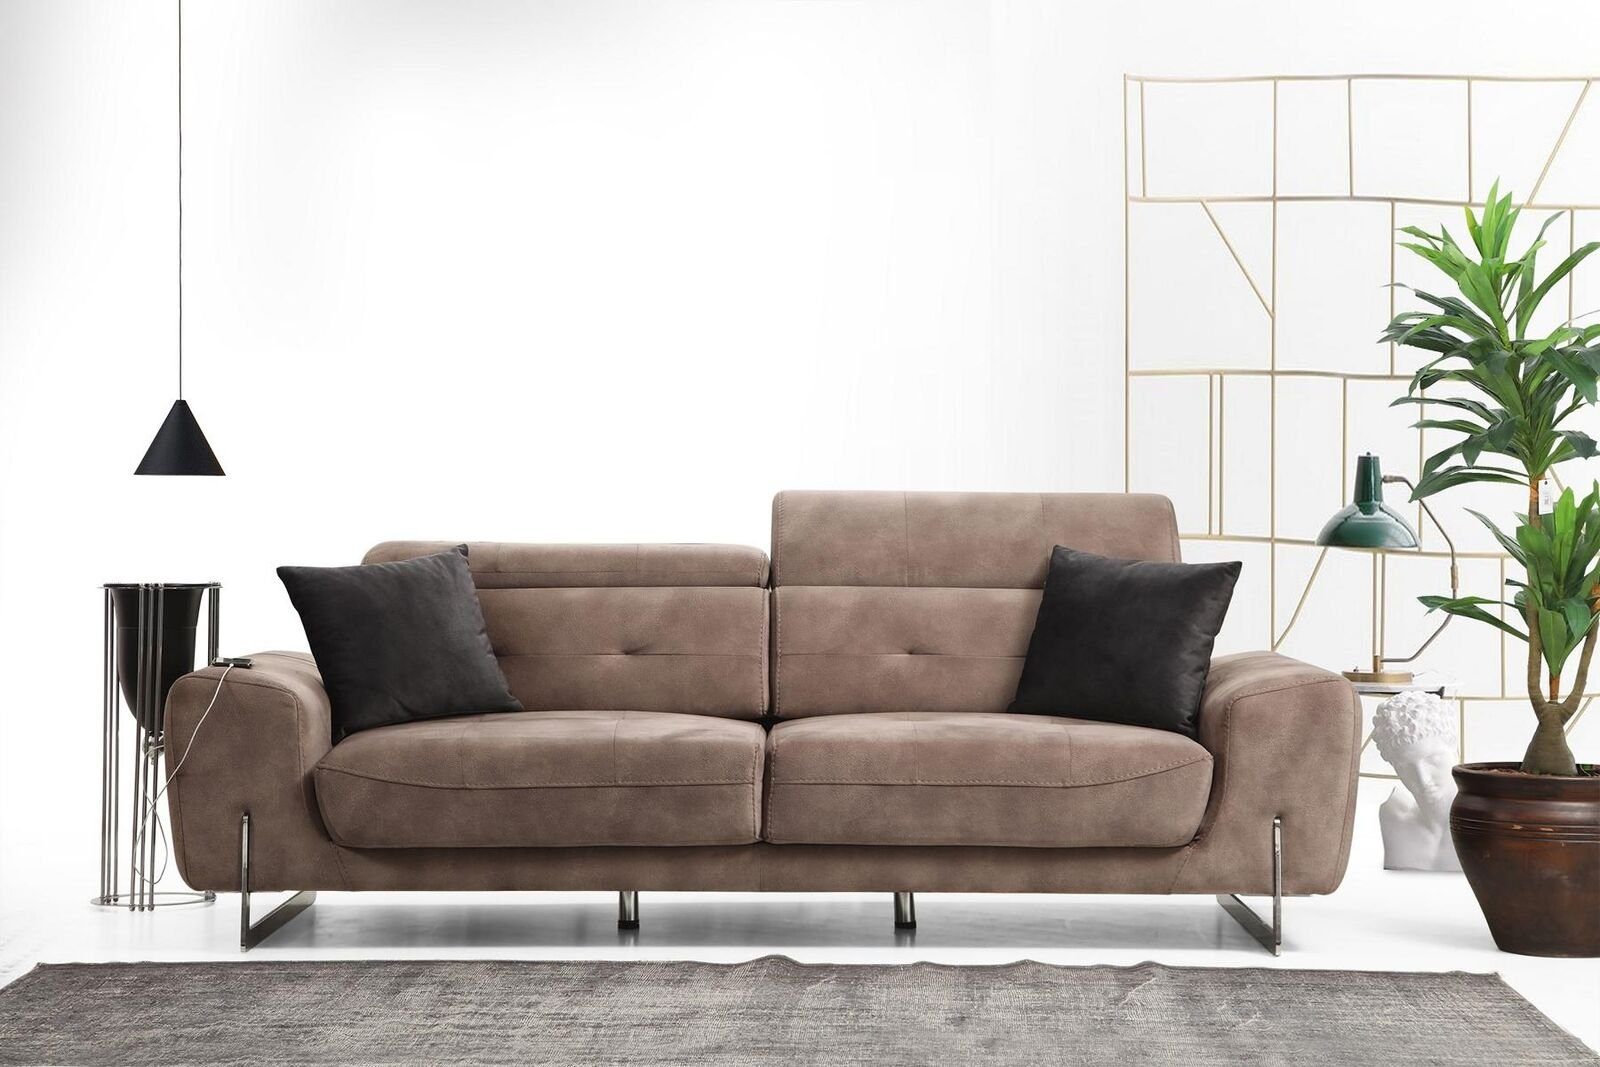 JVmoebel 3-Sitzer Sofa Stil Modern Design Polstermöbel Luxus Textil, 1 Teile, Made in Europa